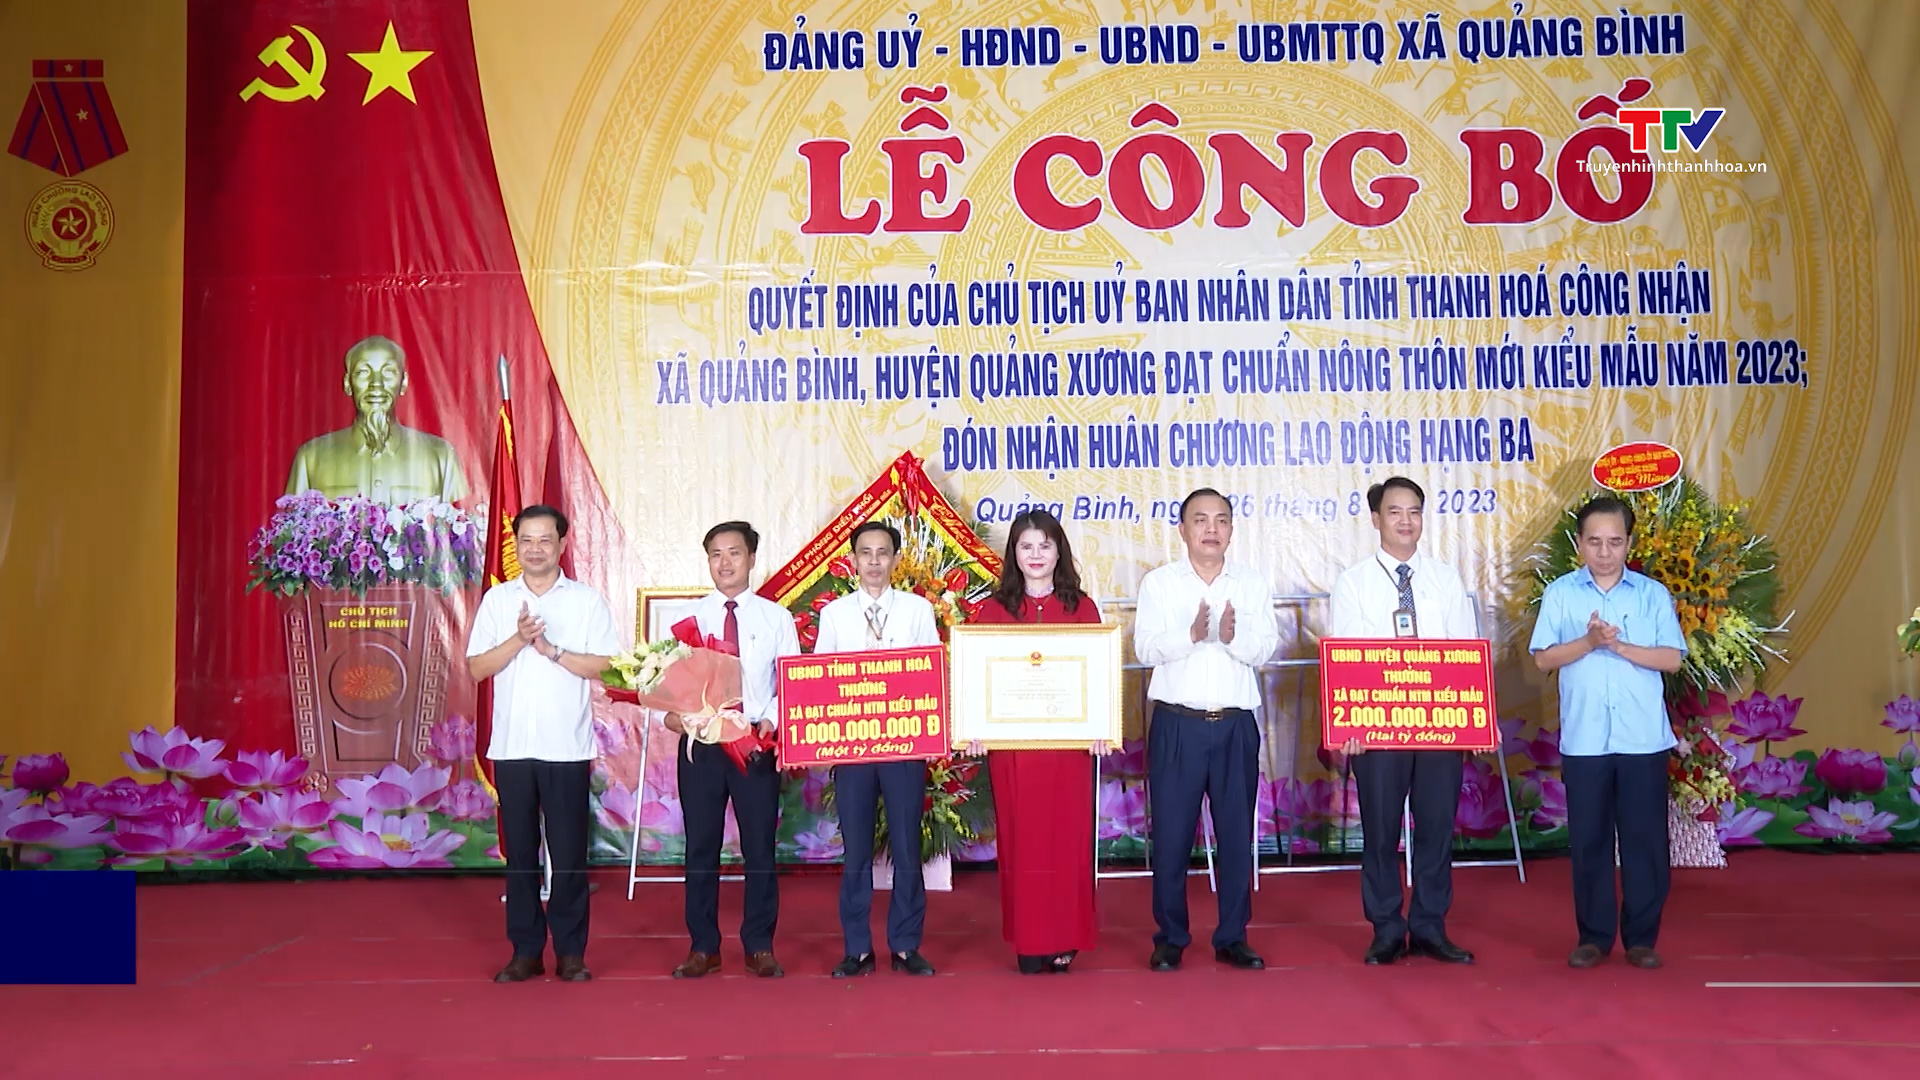 Xã Quảng Bình, huyện Quảng Xương đạt chuẩn nông thôn mới kiểu mẫu năm 2023 - Ảnh 2.